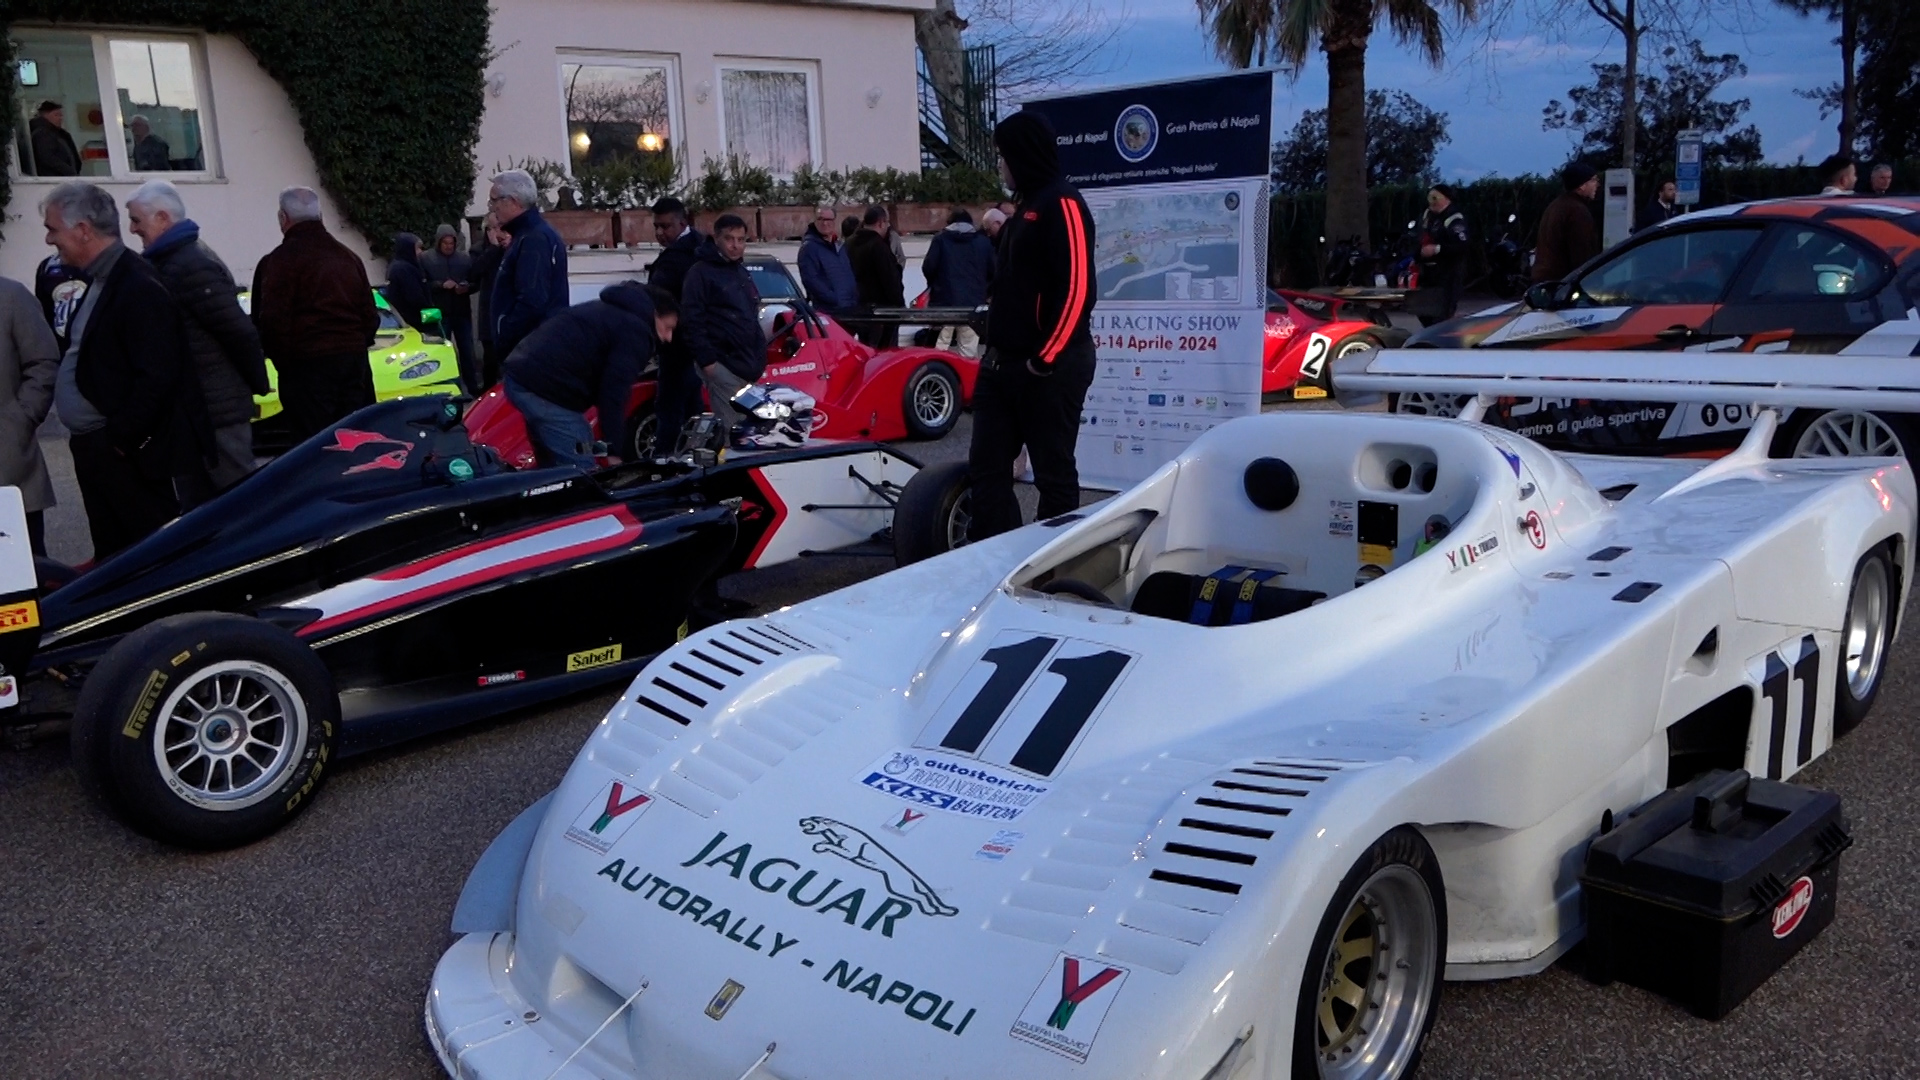 Presentato il 1° Gran Premio di Napoli Racing Show (FOTO - VIDEO) - Napoli  Village - Quotidiano di Informazioni Online